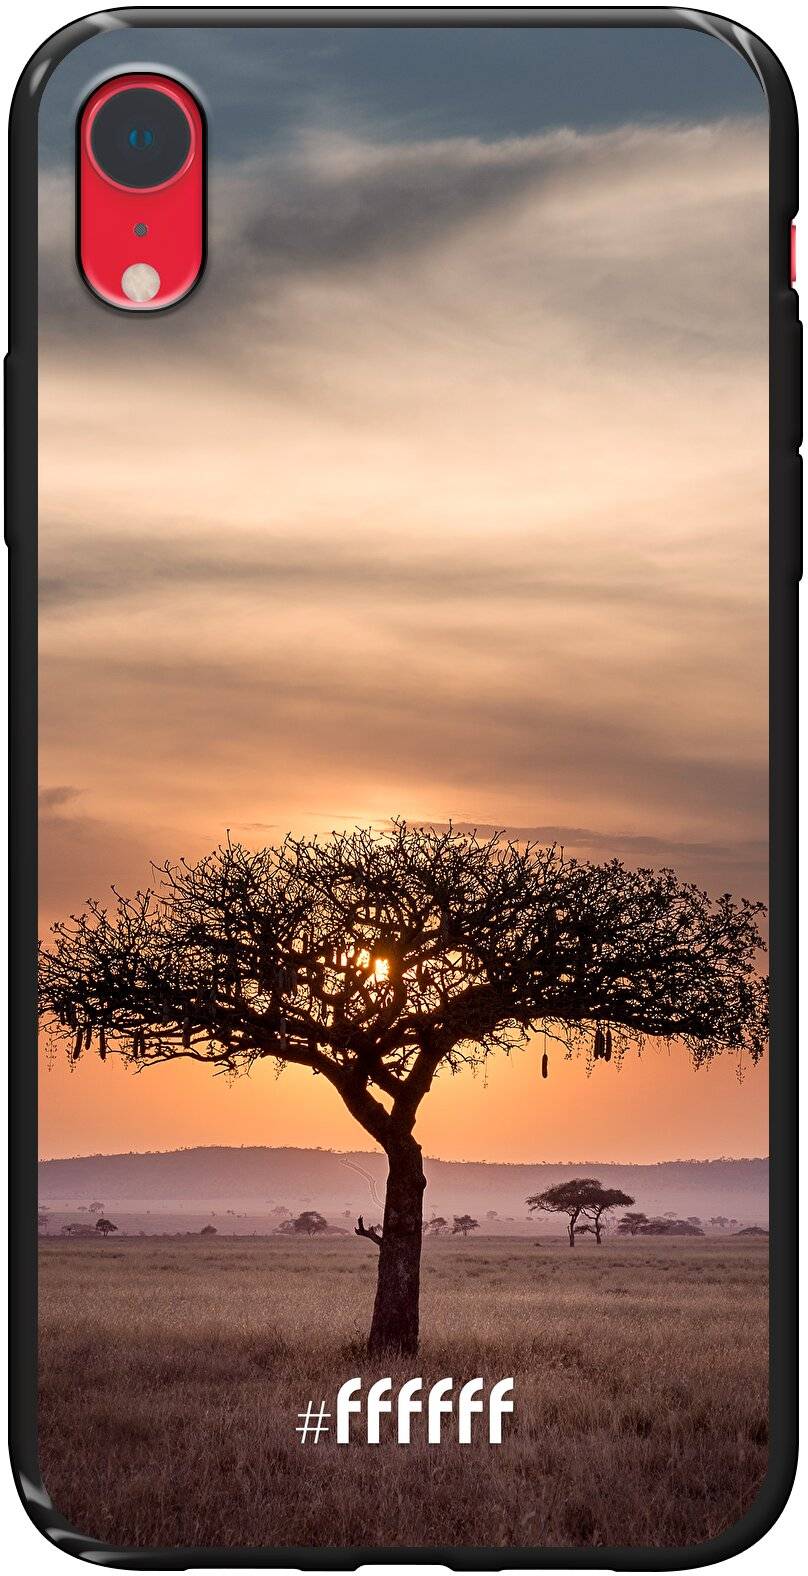 Tanzania iPhone Xr